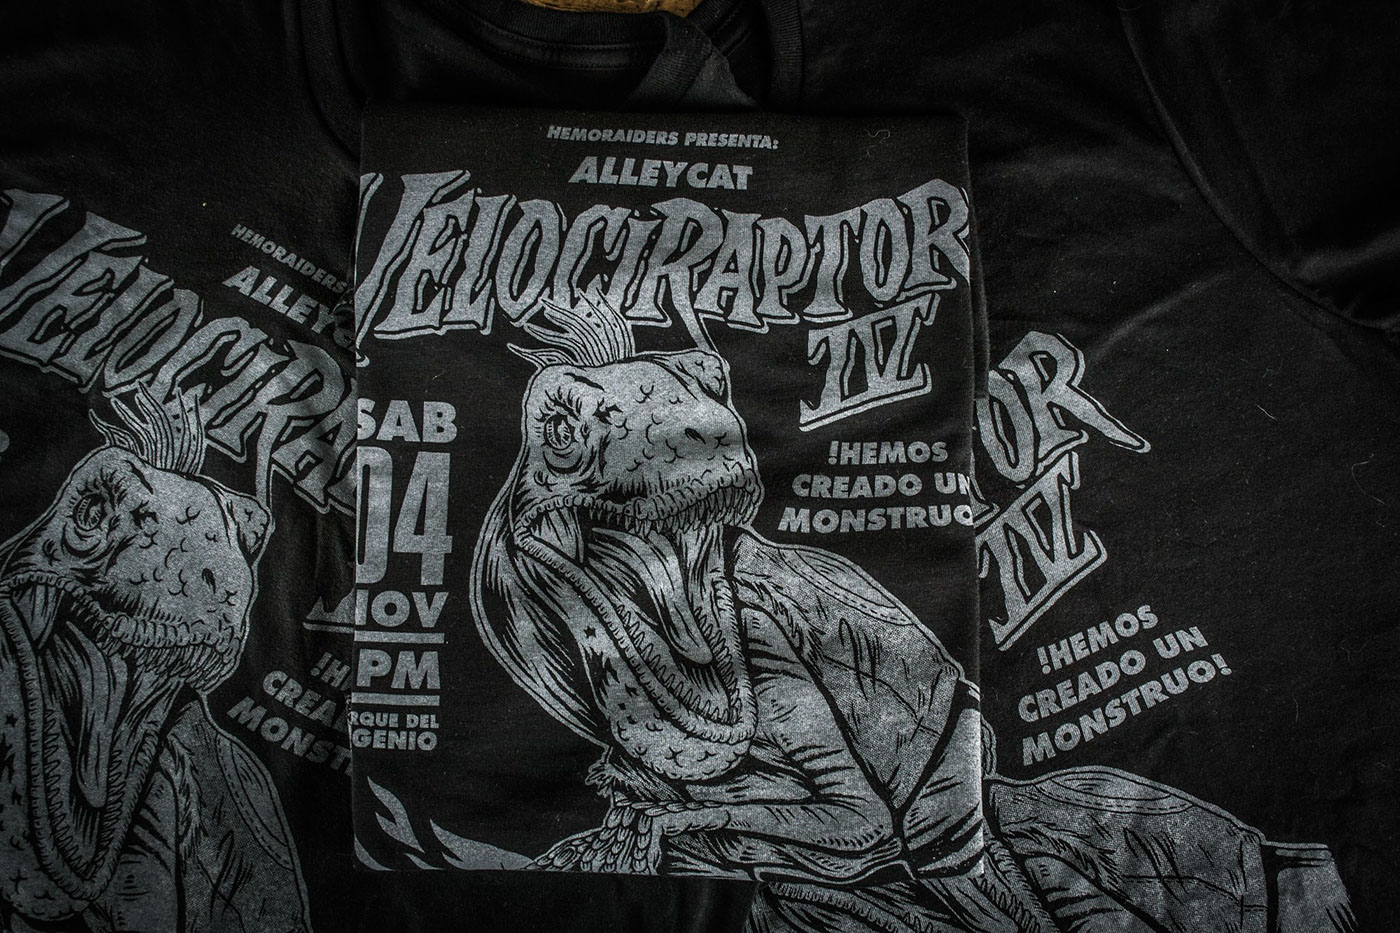 Velociraptor IV on Behance